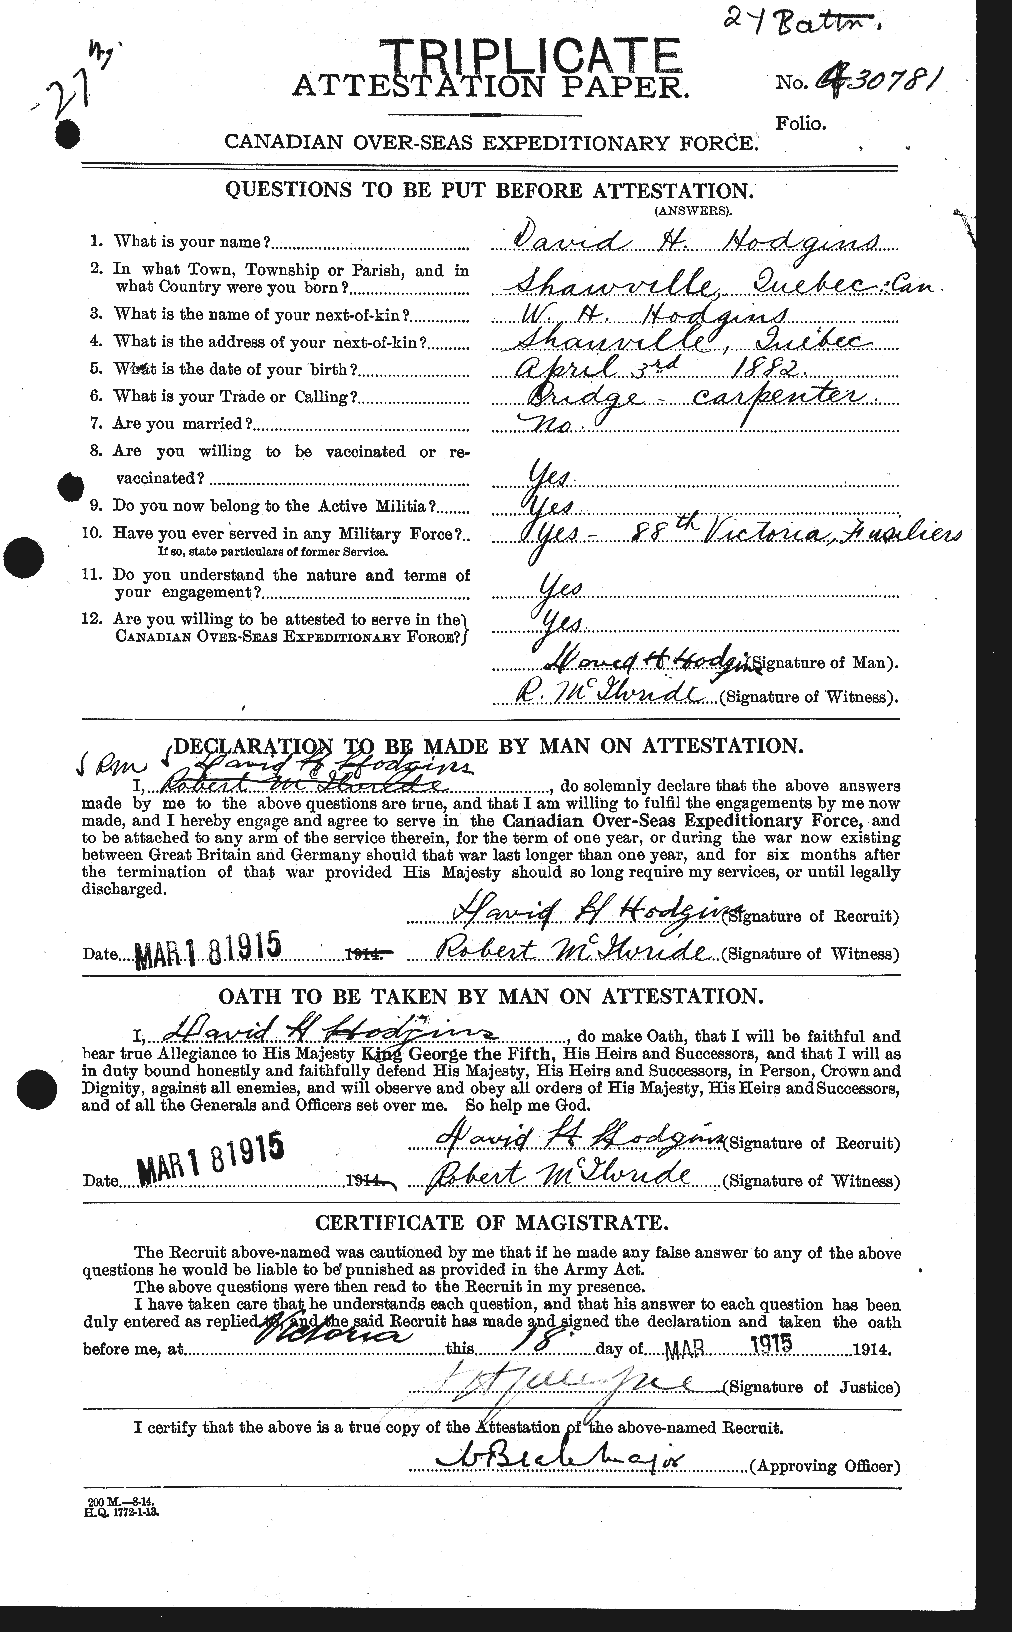 Dossiers du Personnel de la Première Guerre mondiale - CEC 395209a